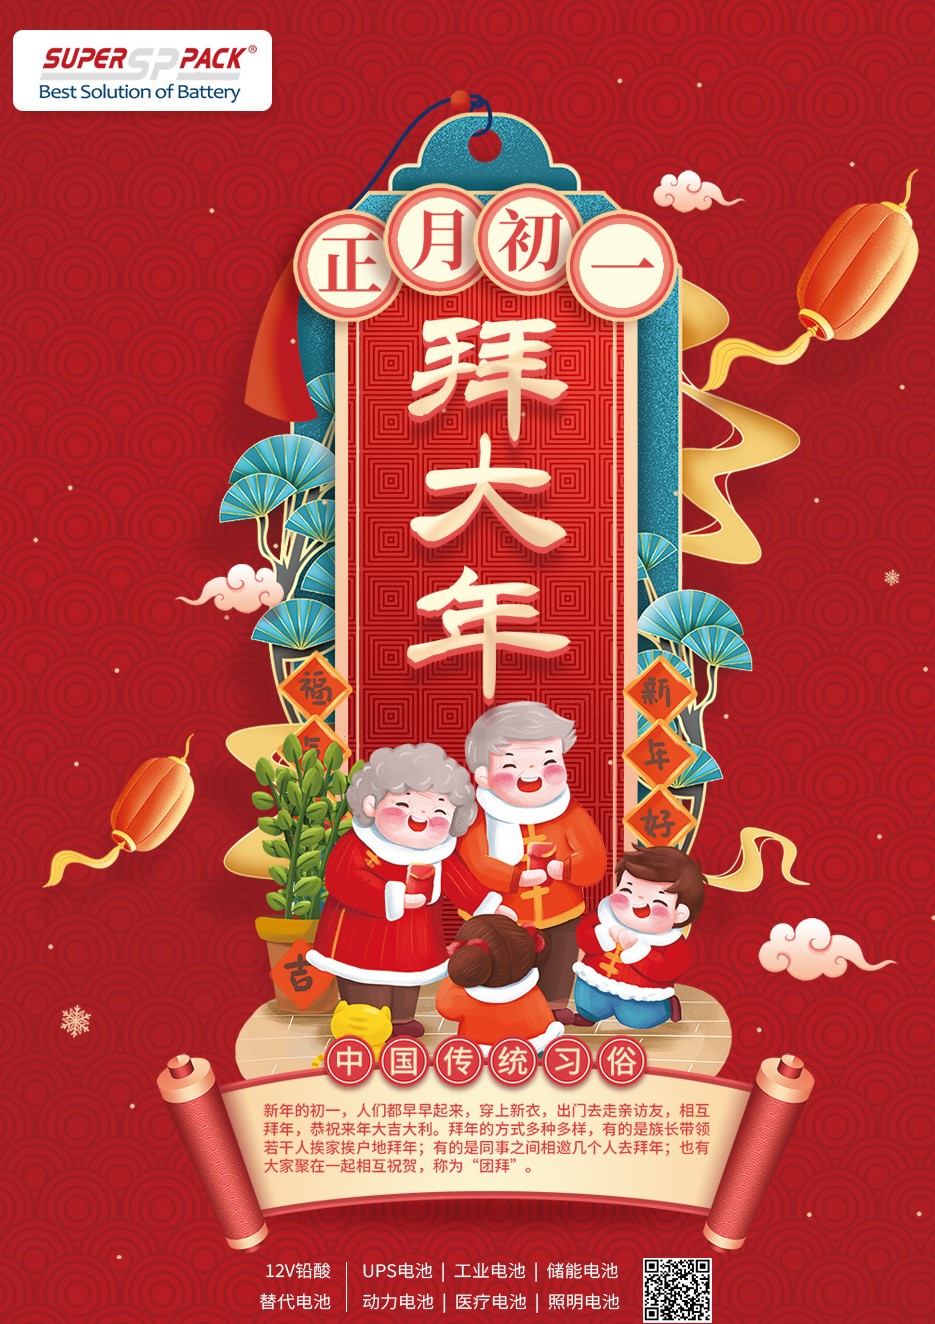 1-й день китайского нового года
